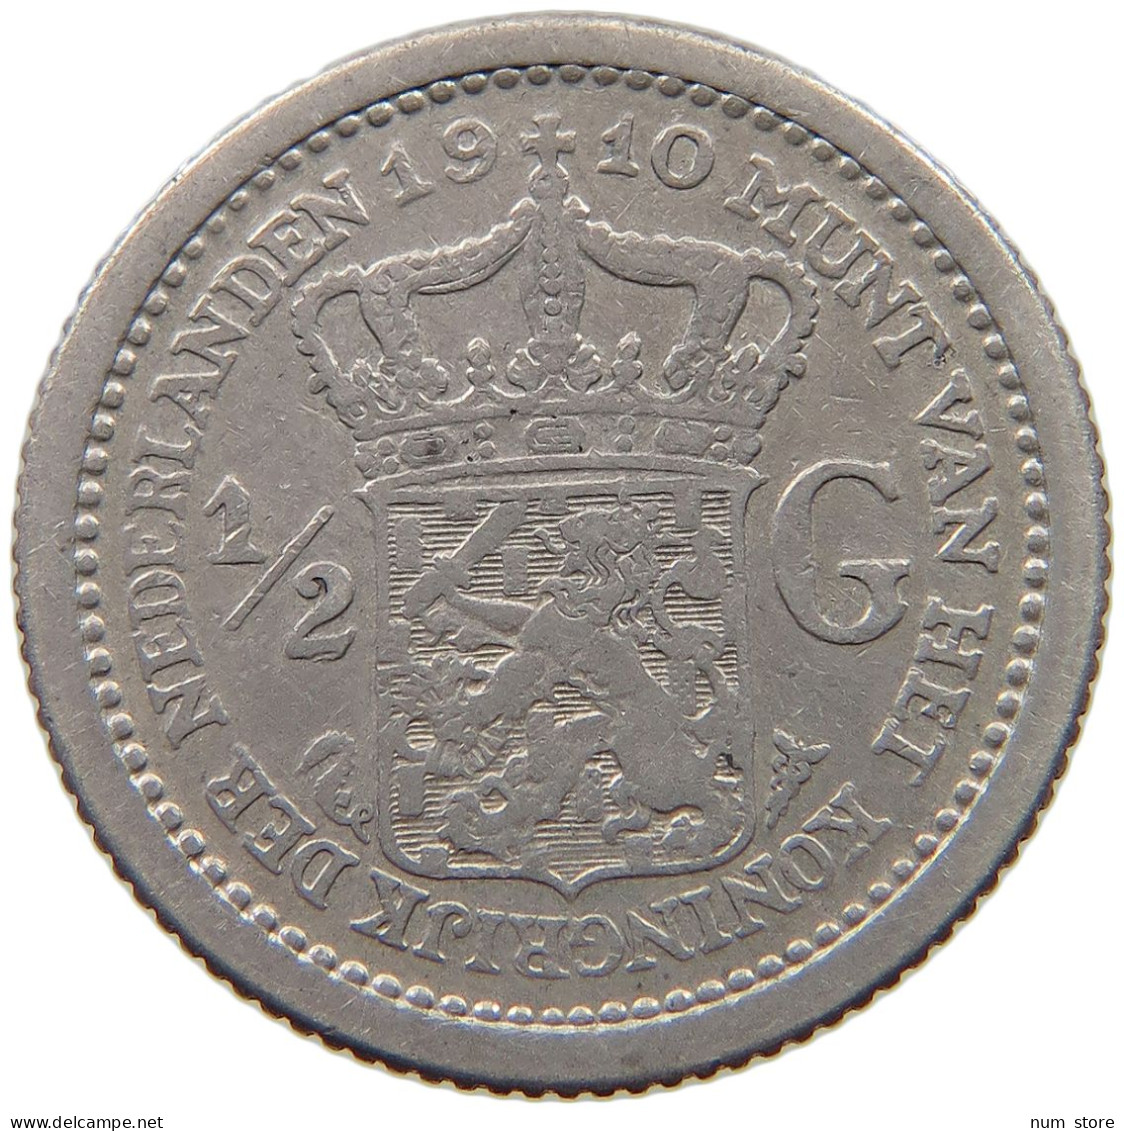 NETHERLANDS 1/2 GULDEN 1910 Wilhelmina 1890-1948 #t113 0111 - 1/2 Gulden